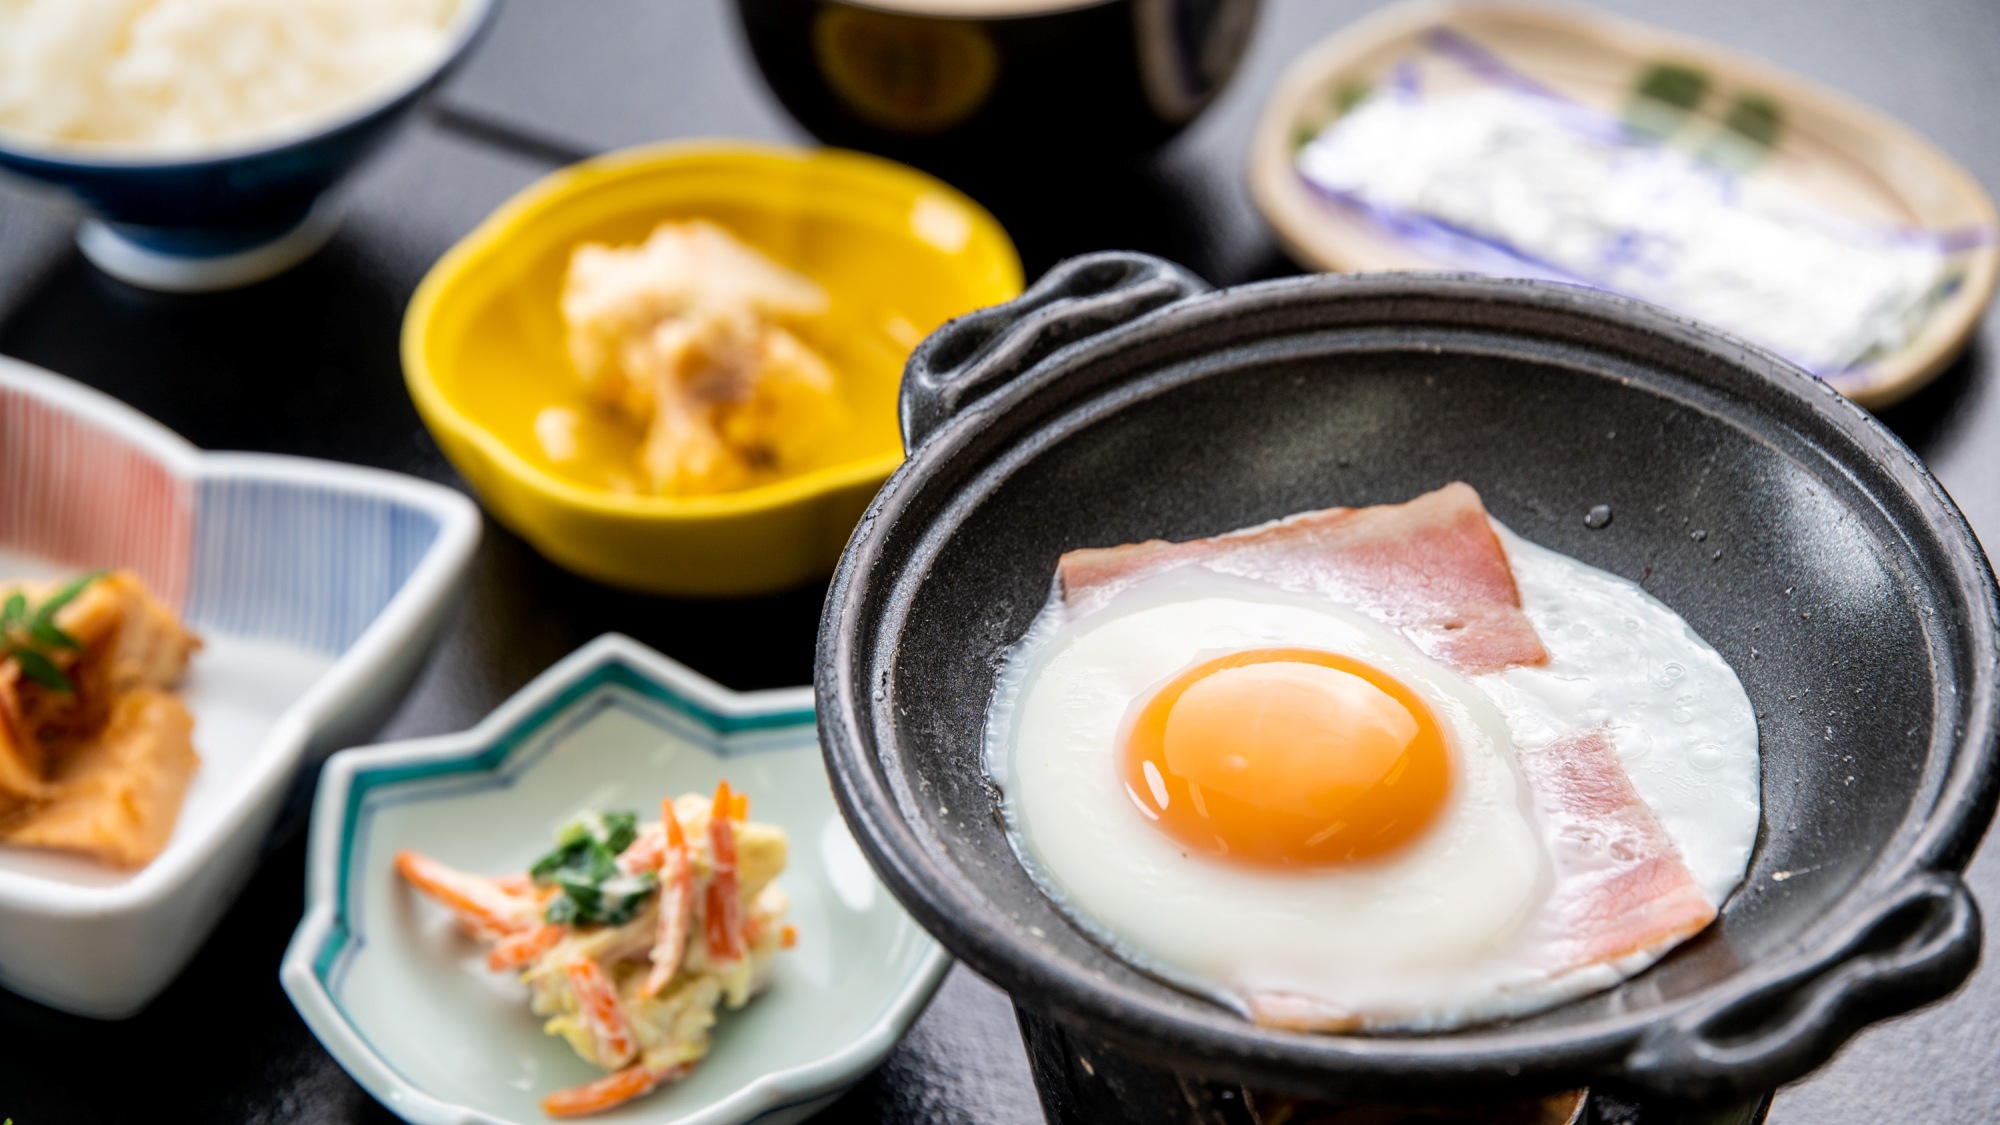 【1泊朝食】女将自慢の朝ごはん〜炊き立て菊池米と手作り料理のおもてなし